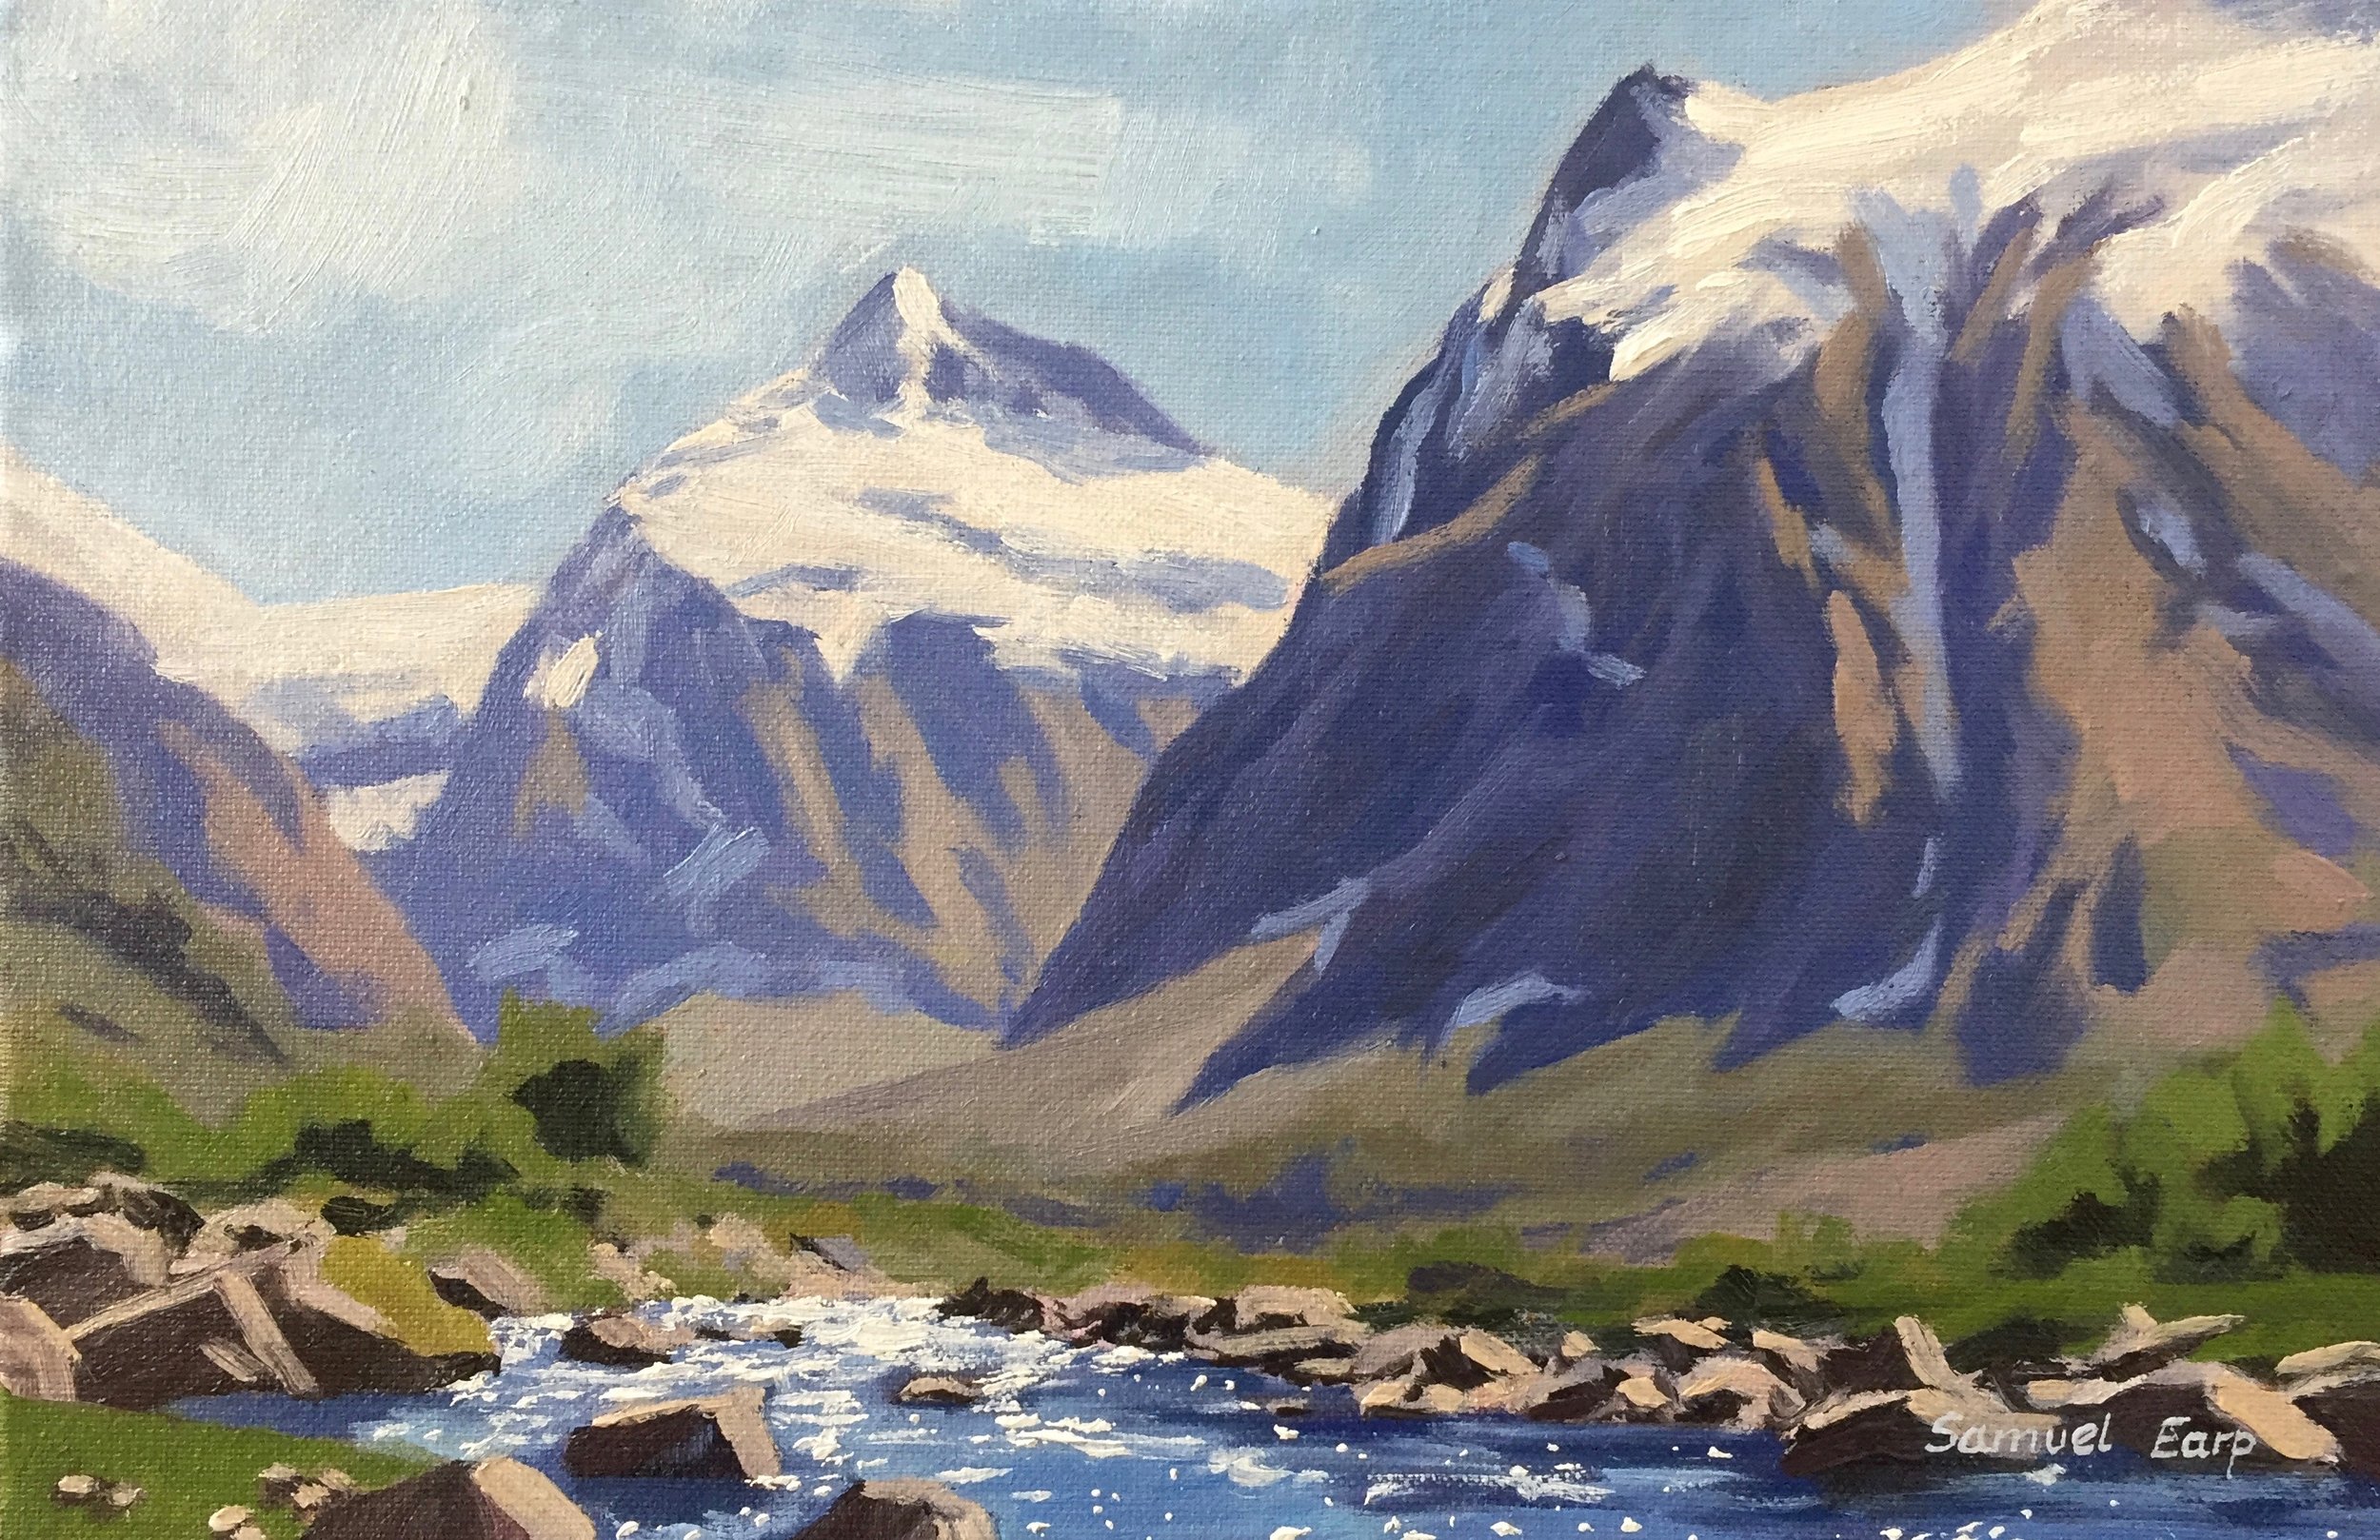 Mt Talbot Fiordland - plein air - Samuel Earp - oil painting - landscape artist.jpg